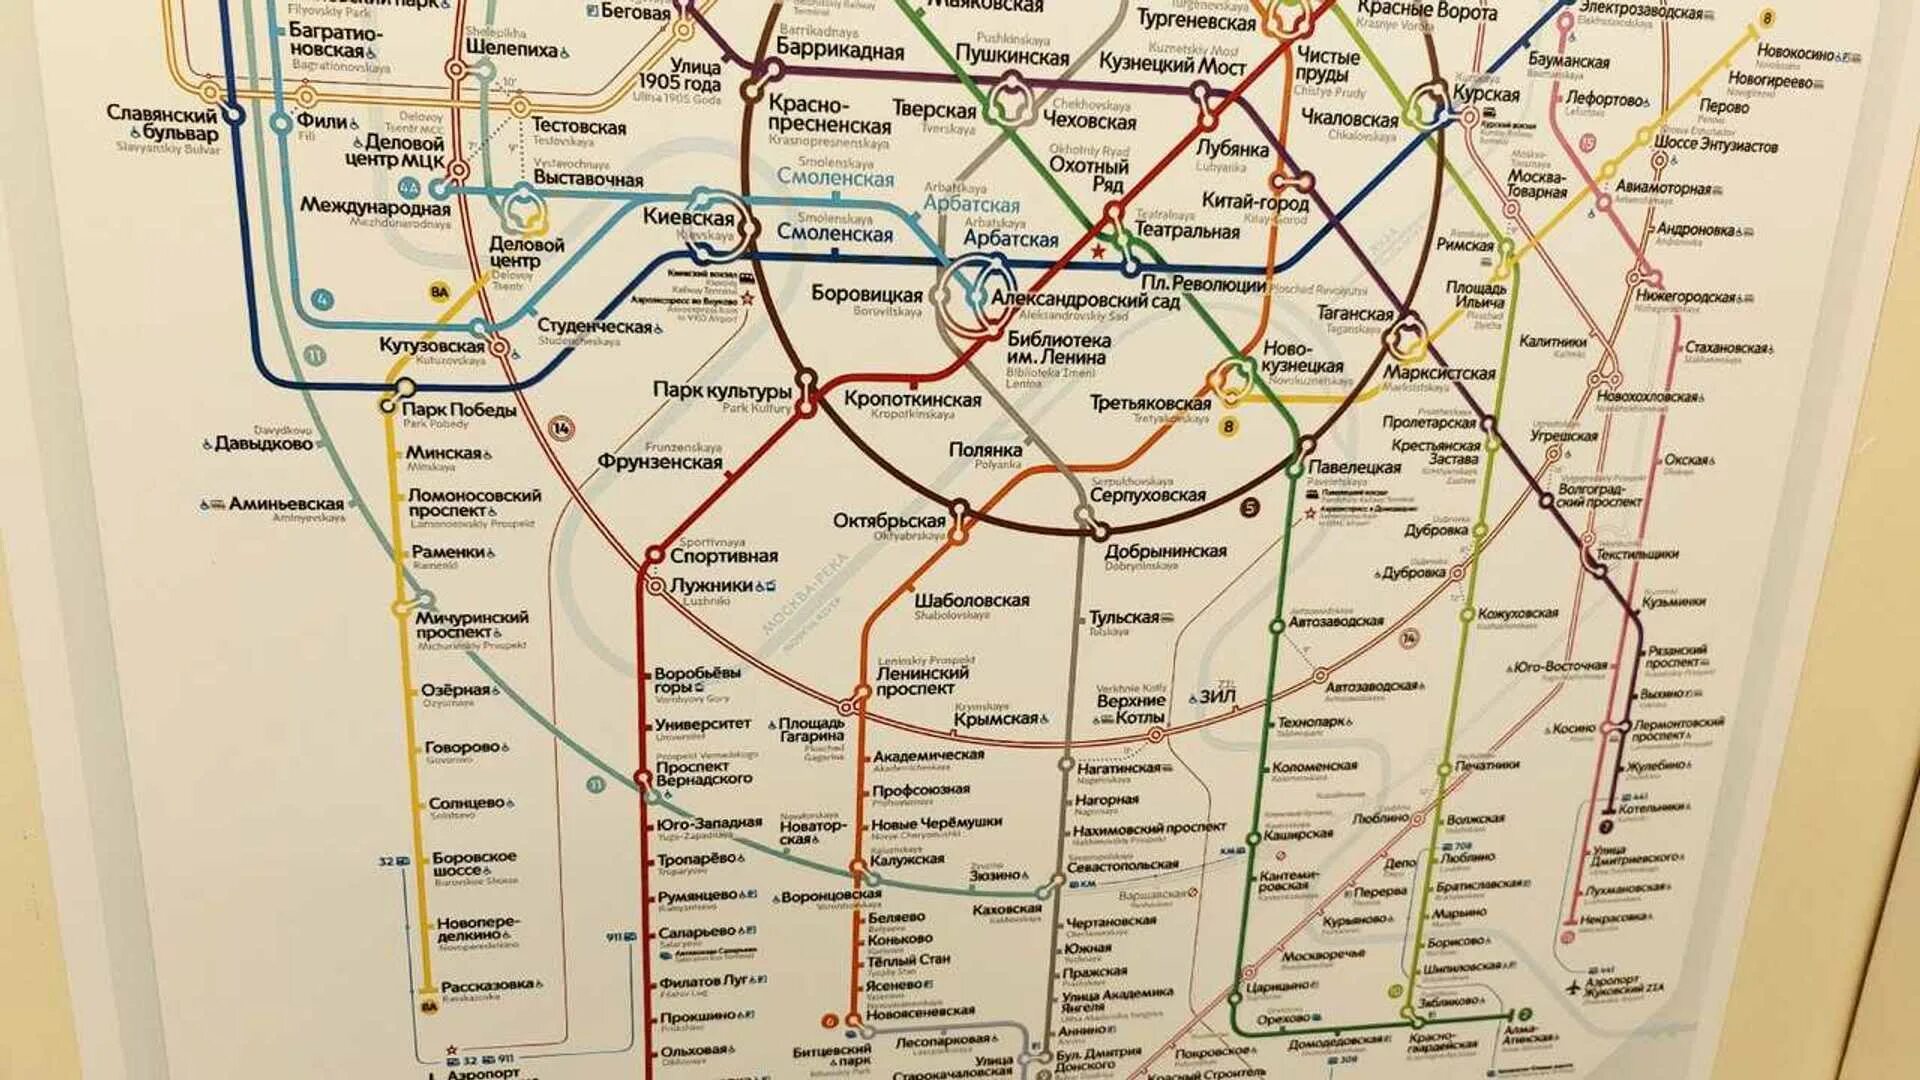 Карта метрополитена Москвы новая 2022. Схема Московского метрополитена 2022. Карта метро Москвы 2022. Московский метрополитен схема 2022 года.